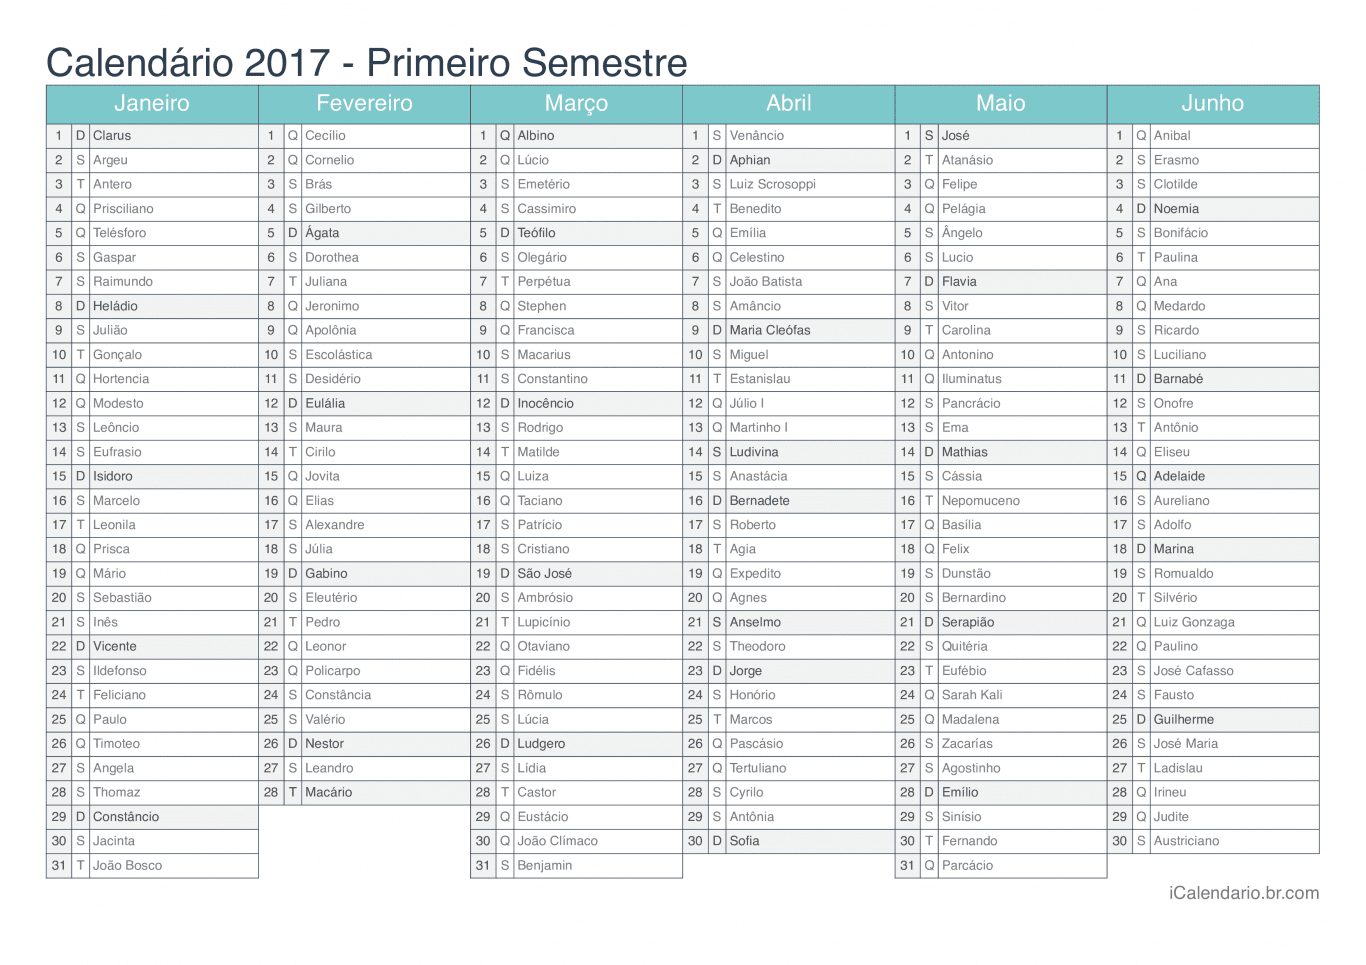 Calendário por semestre 2017 com festa do dia - Turquesa